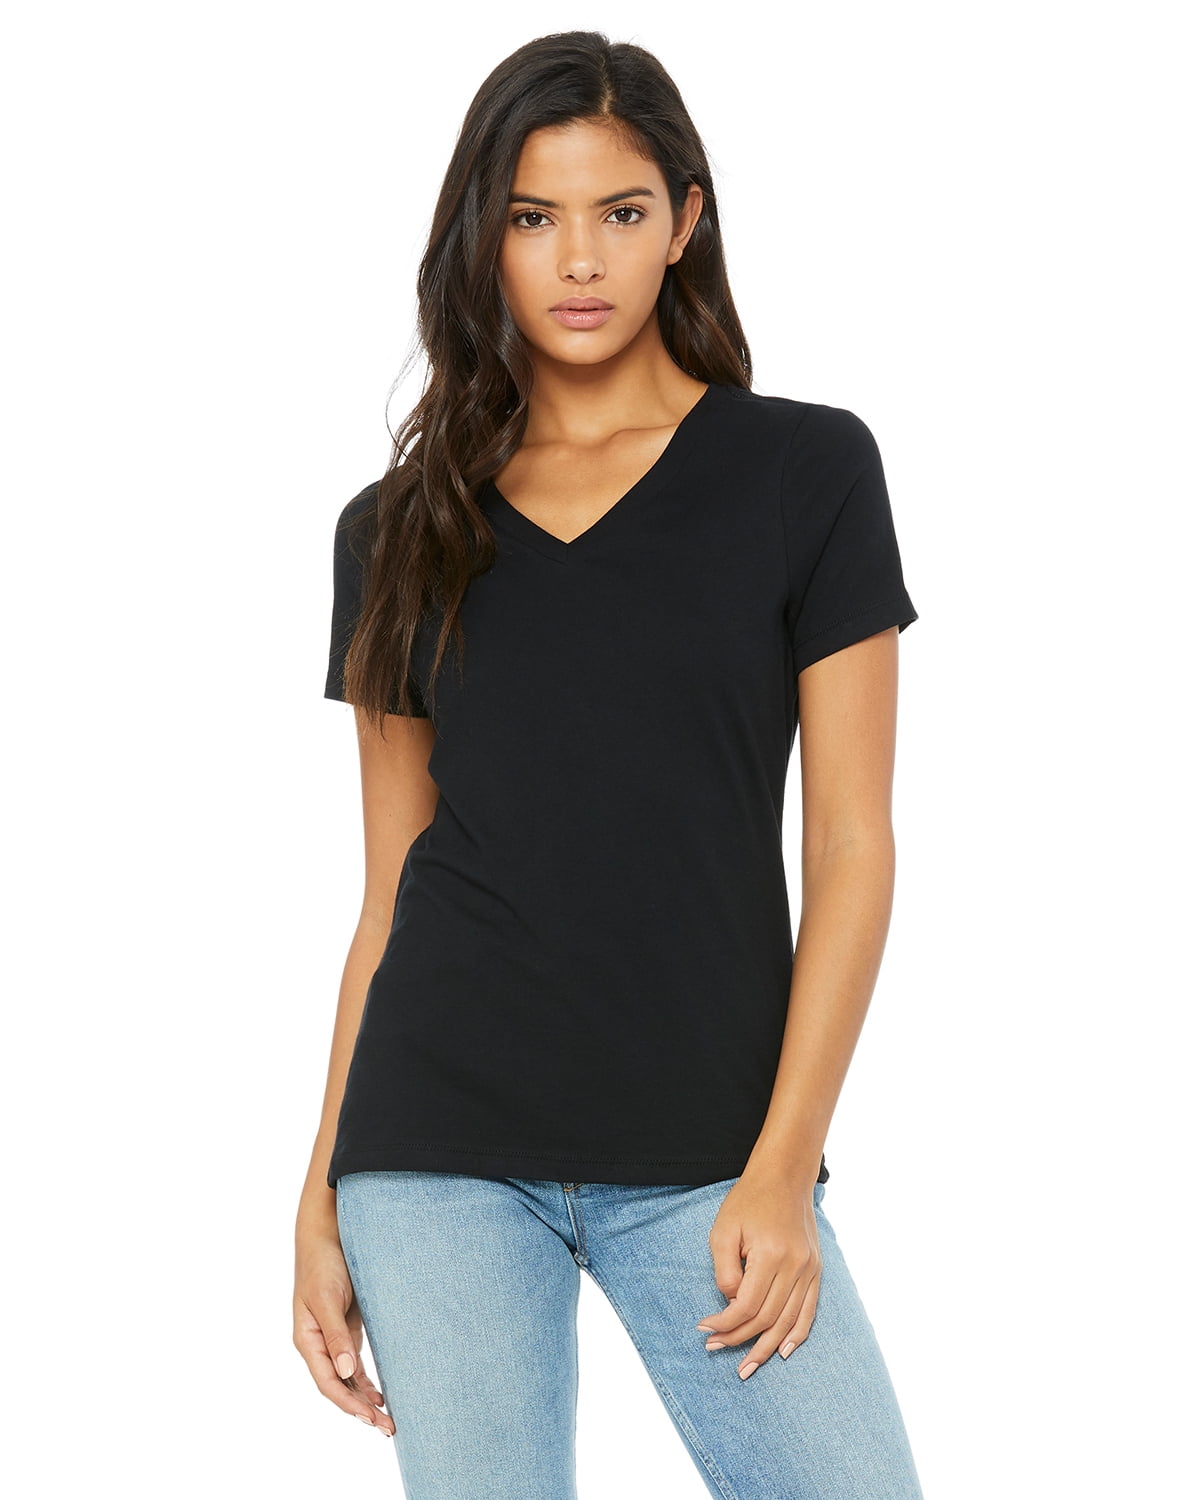 Women's Relaxed Cotton V-Neck T-Shirt - Walmart.com